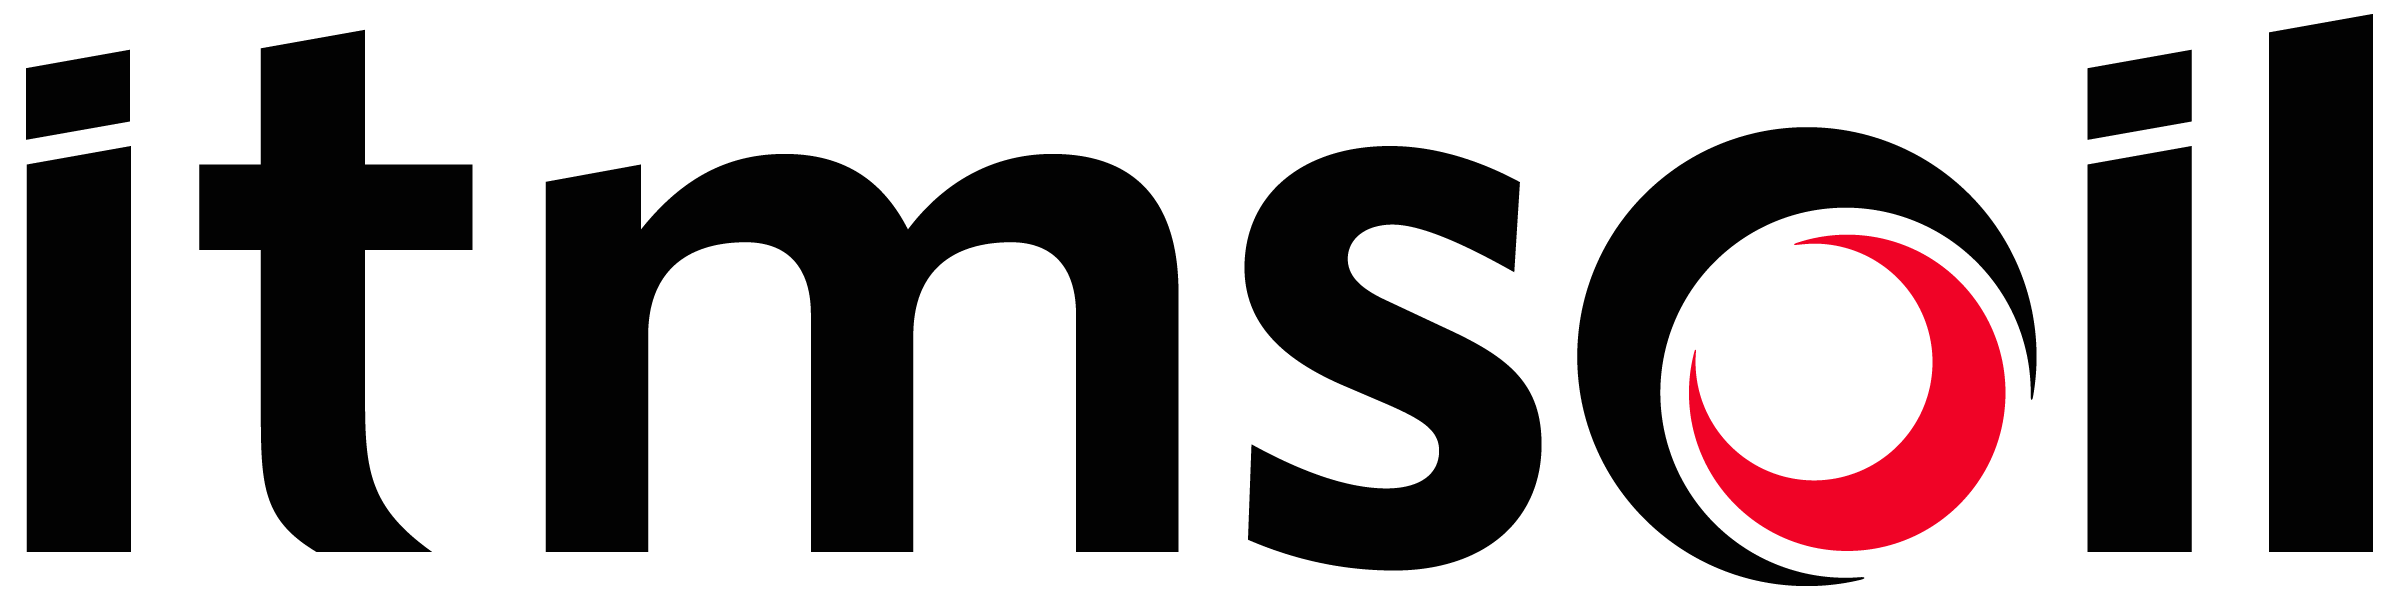 sa-itm-soil-logo